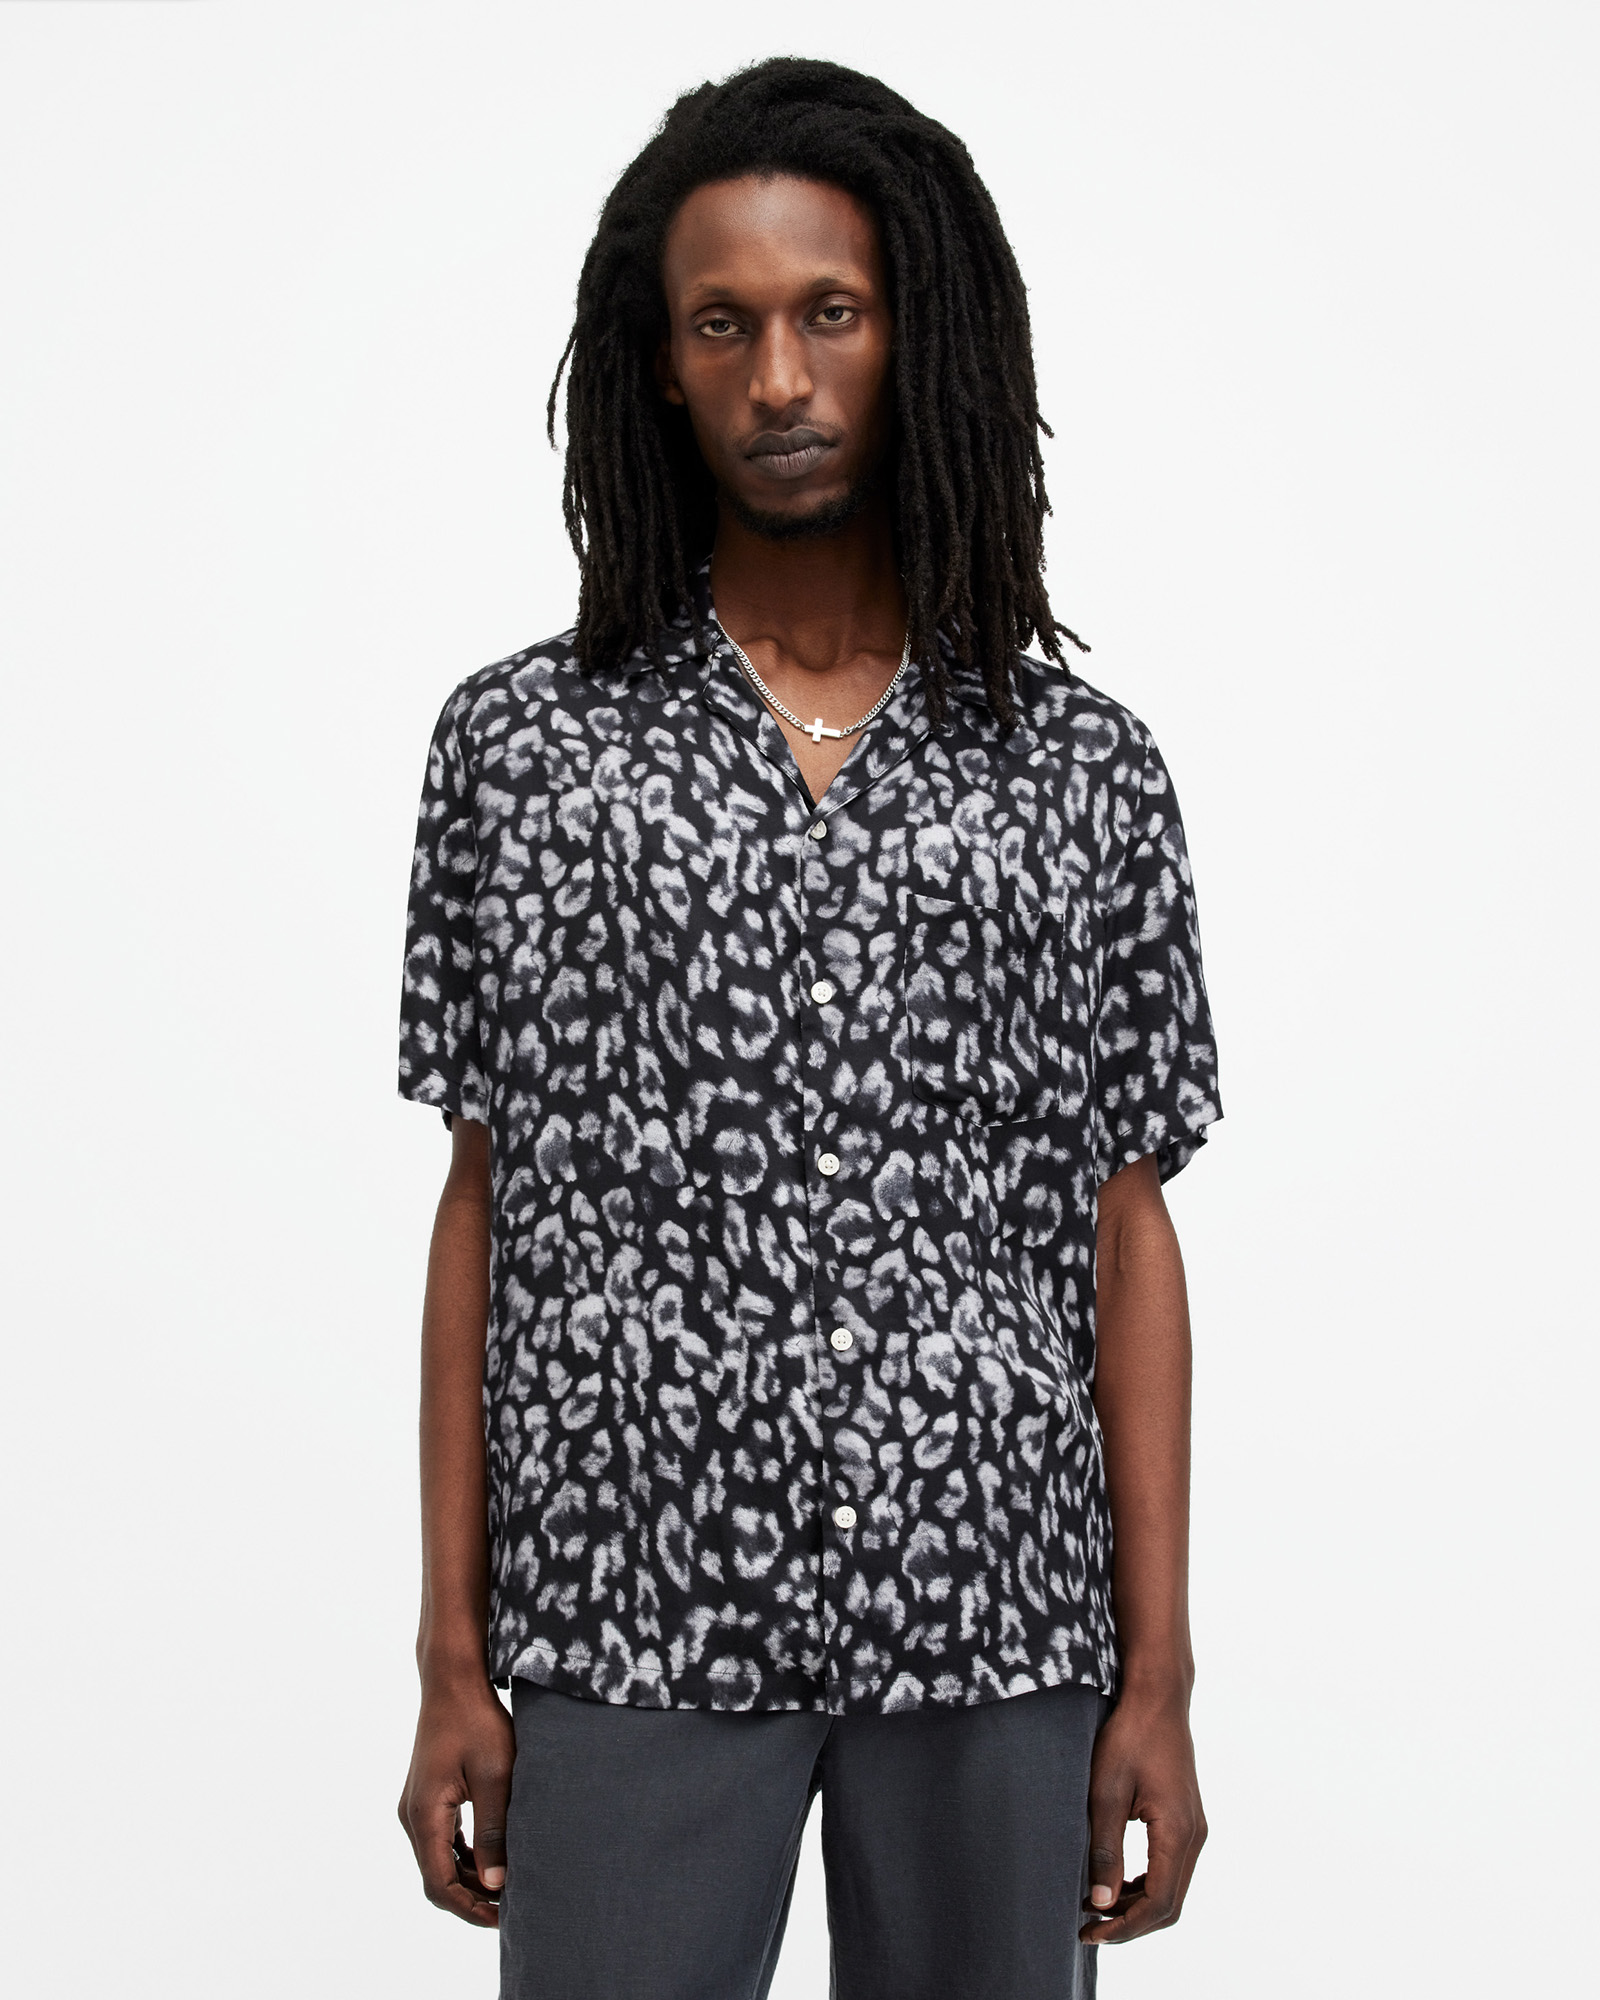 AllSaints Leopaz Leopard Print Relaxed Fit Shirt,, Jet Black